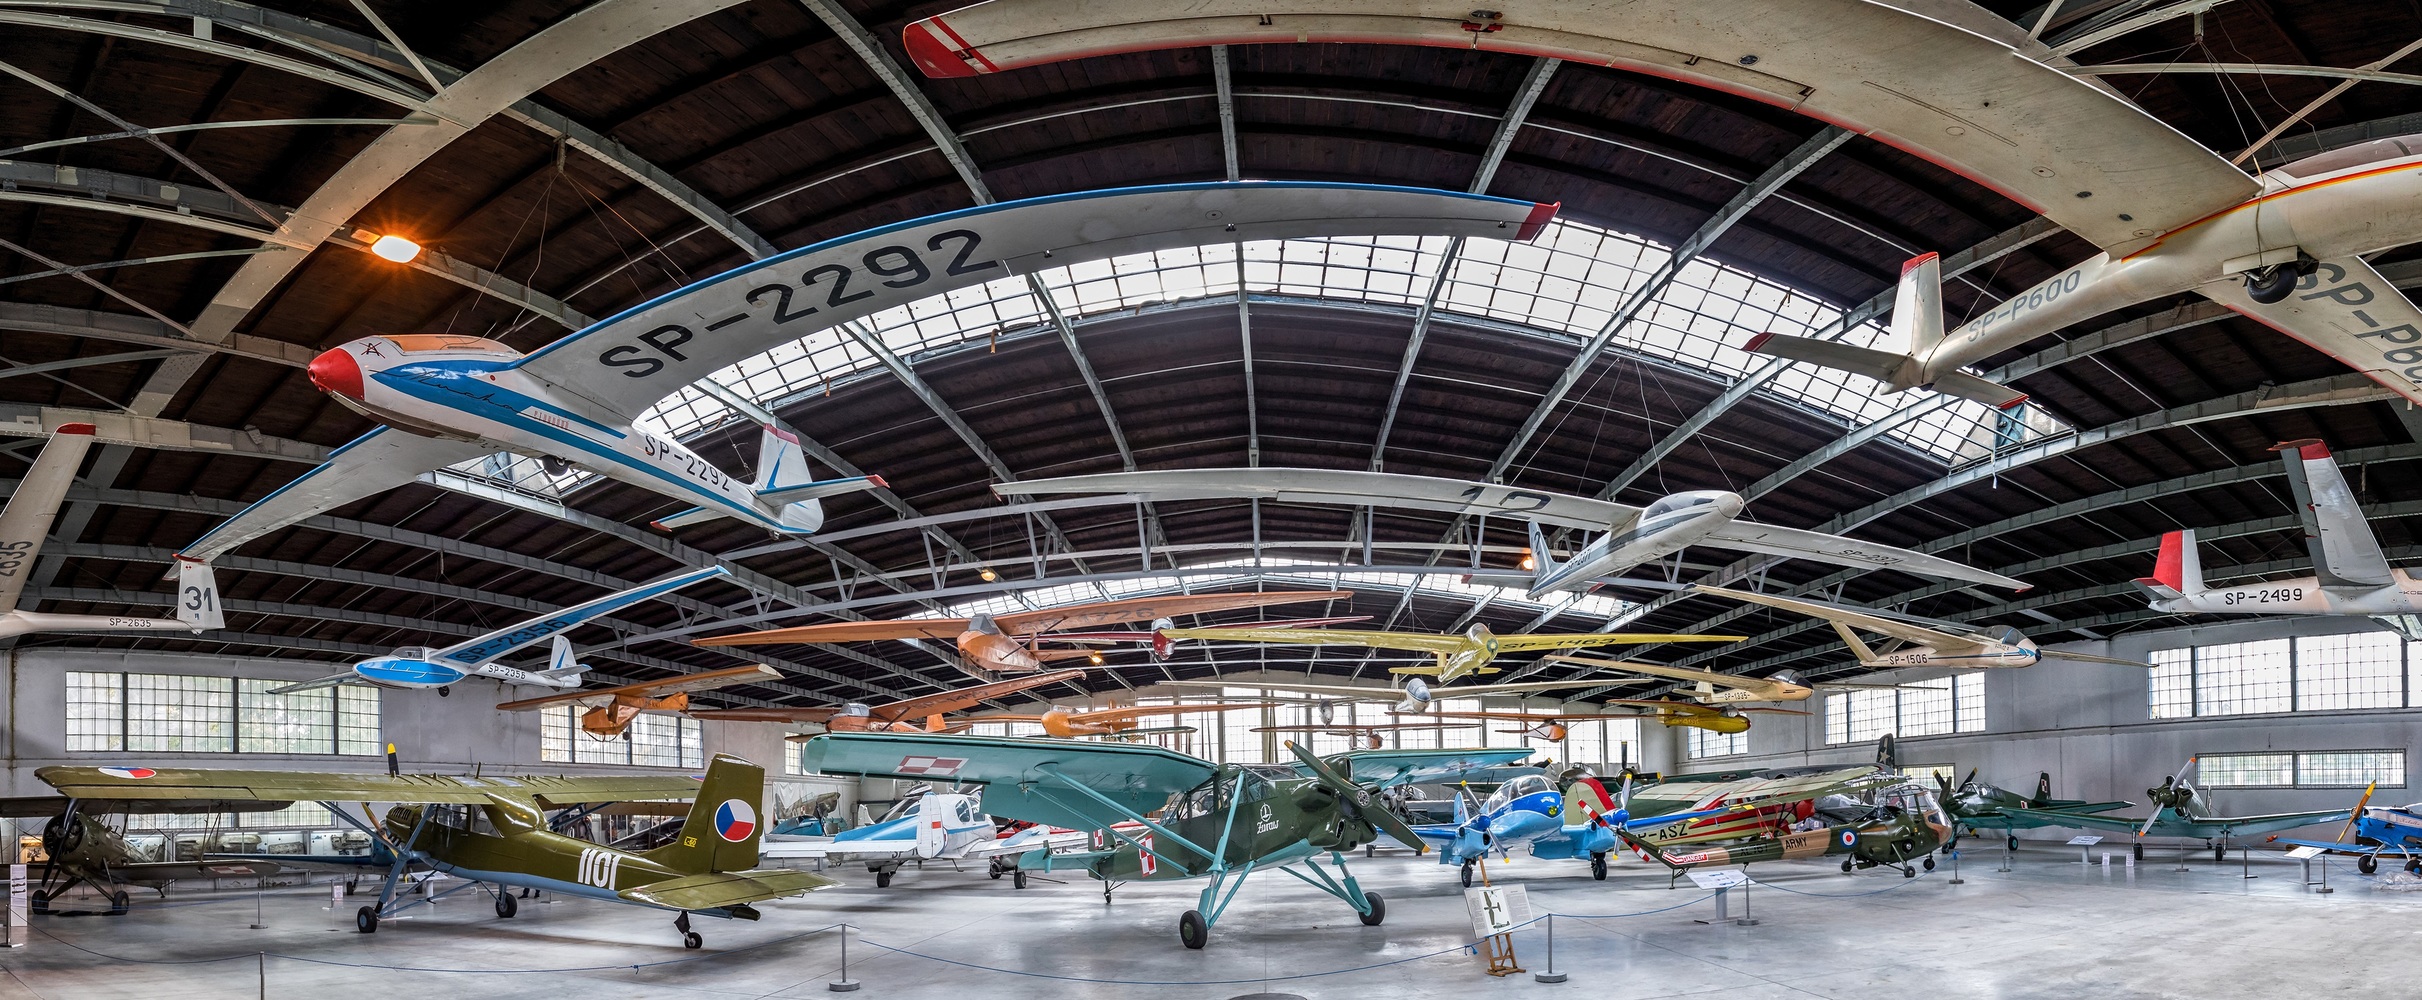 Le Musée de l'aviation polonaise à Cracovie